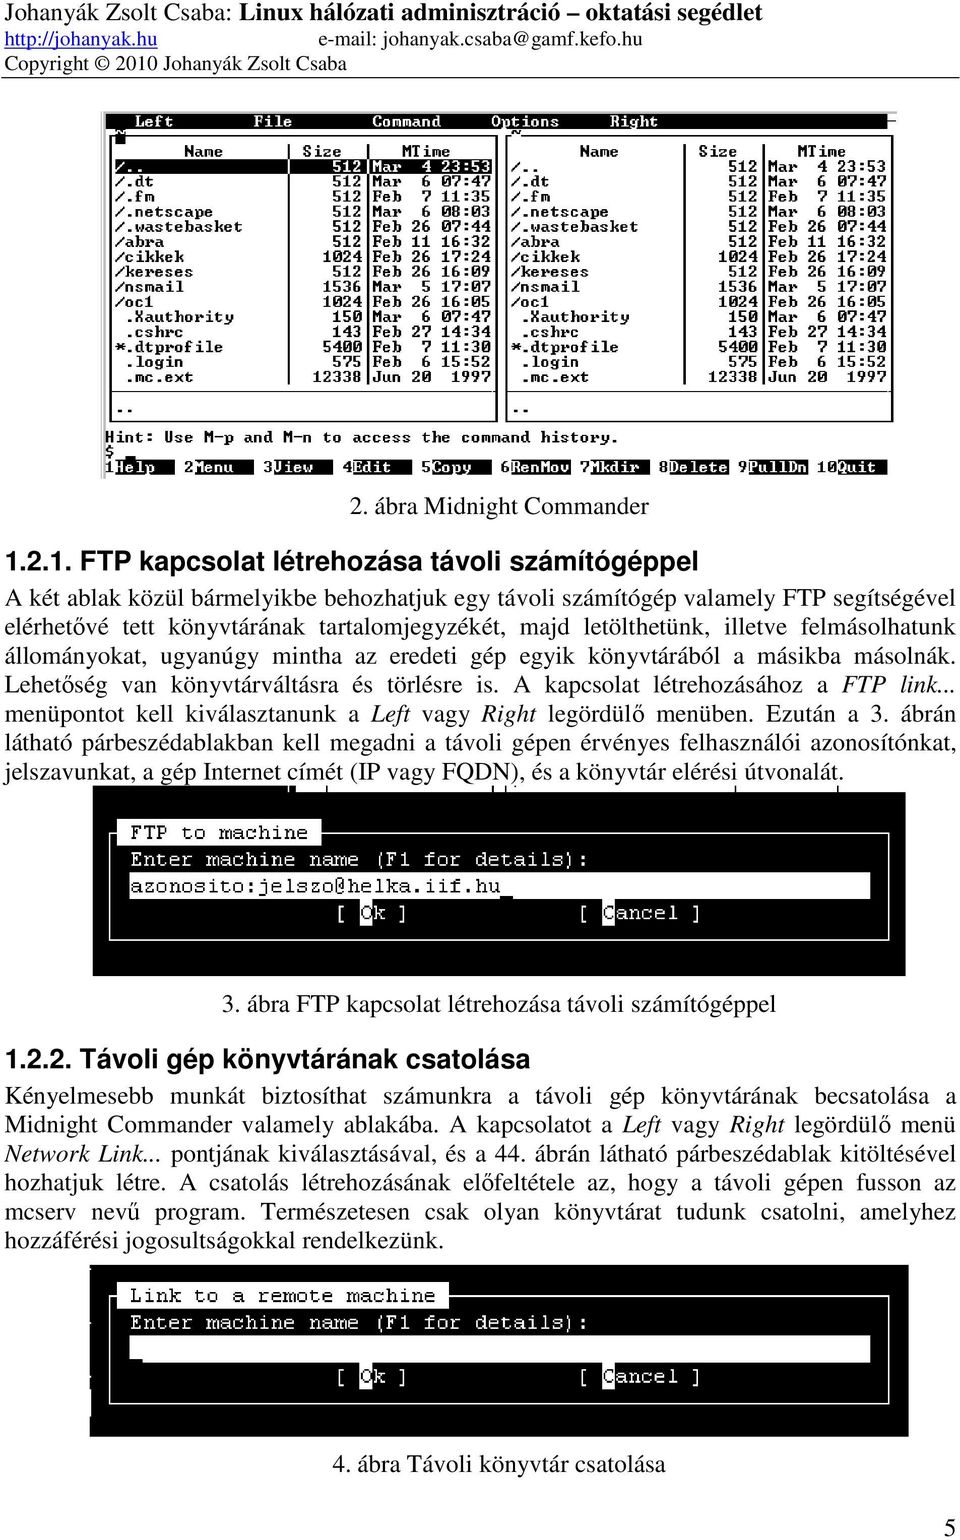 2.1. FTP kapcsolat létrehozása távoli számítógéppel A két ablak közül bármelyikbe behozhatjuk egy távoli számítógép valamely FTP segítségével elérhetővé tett könyvtárának tartalomjegyzékét, majd